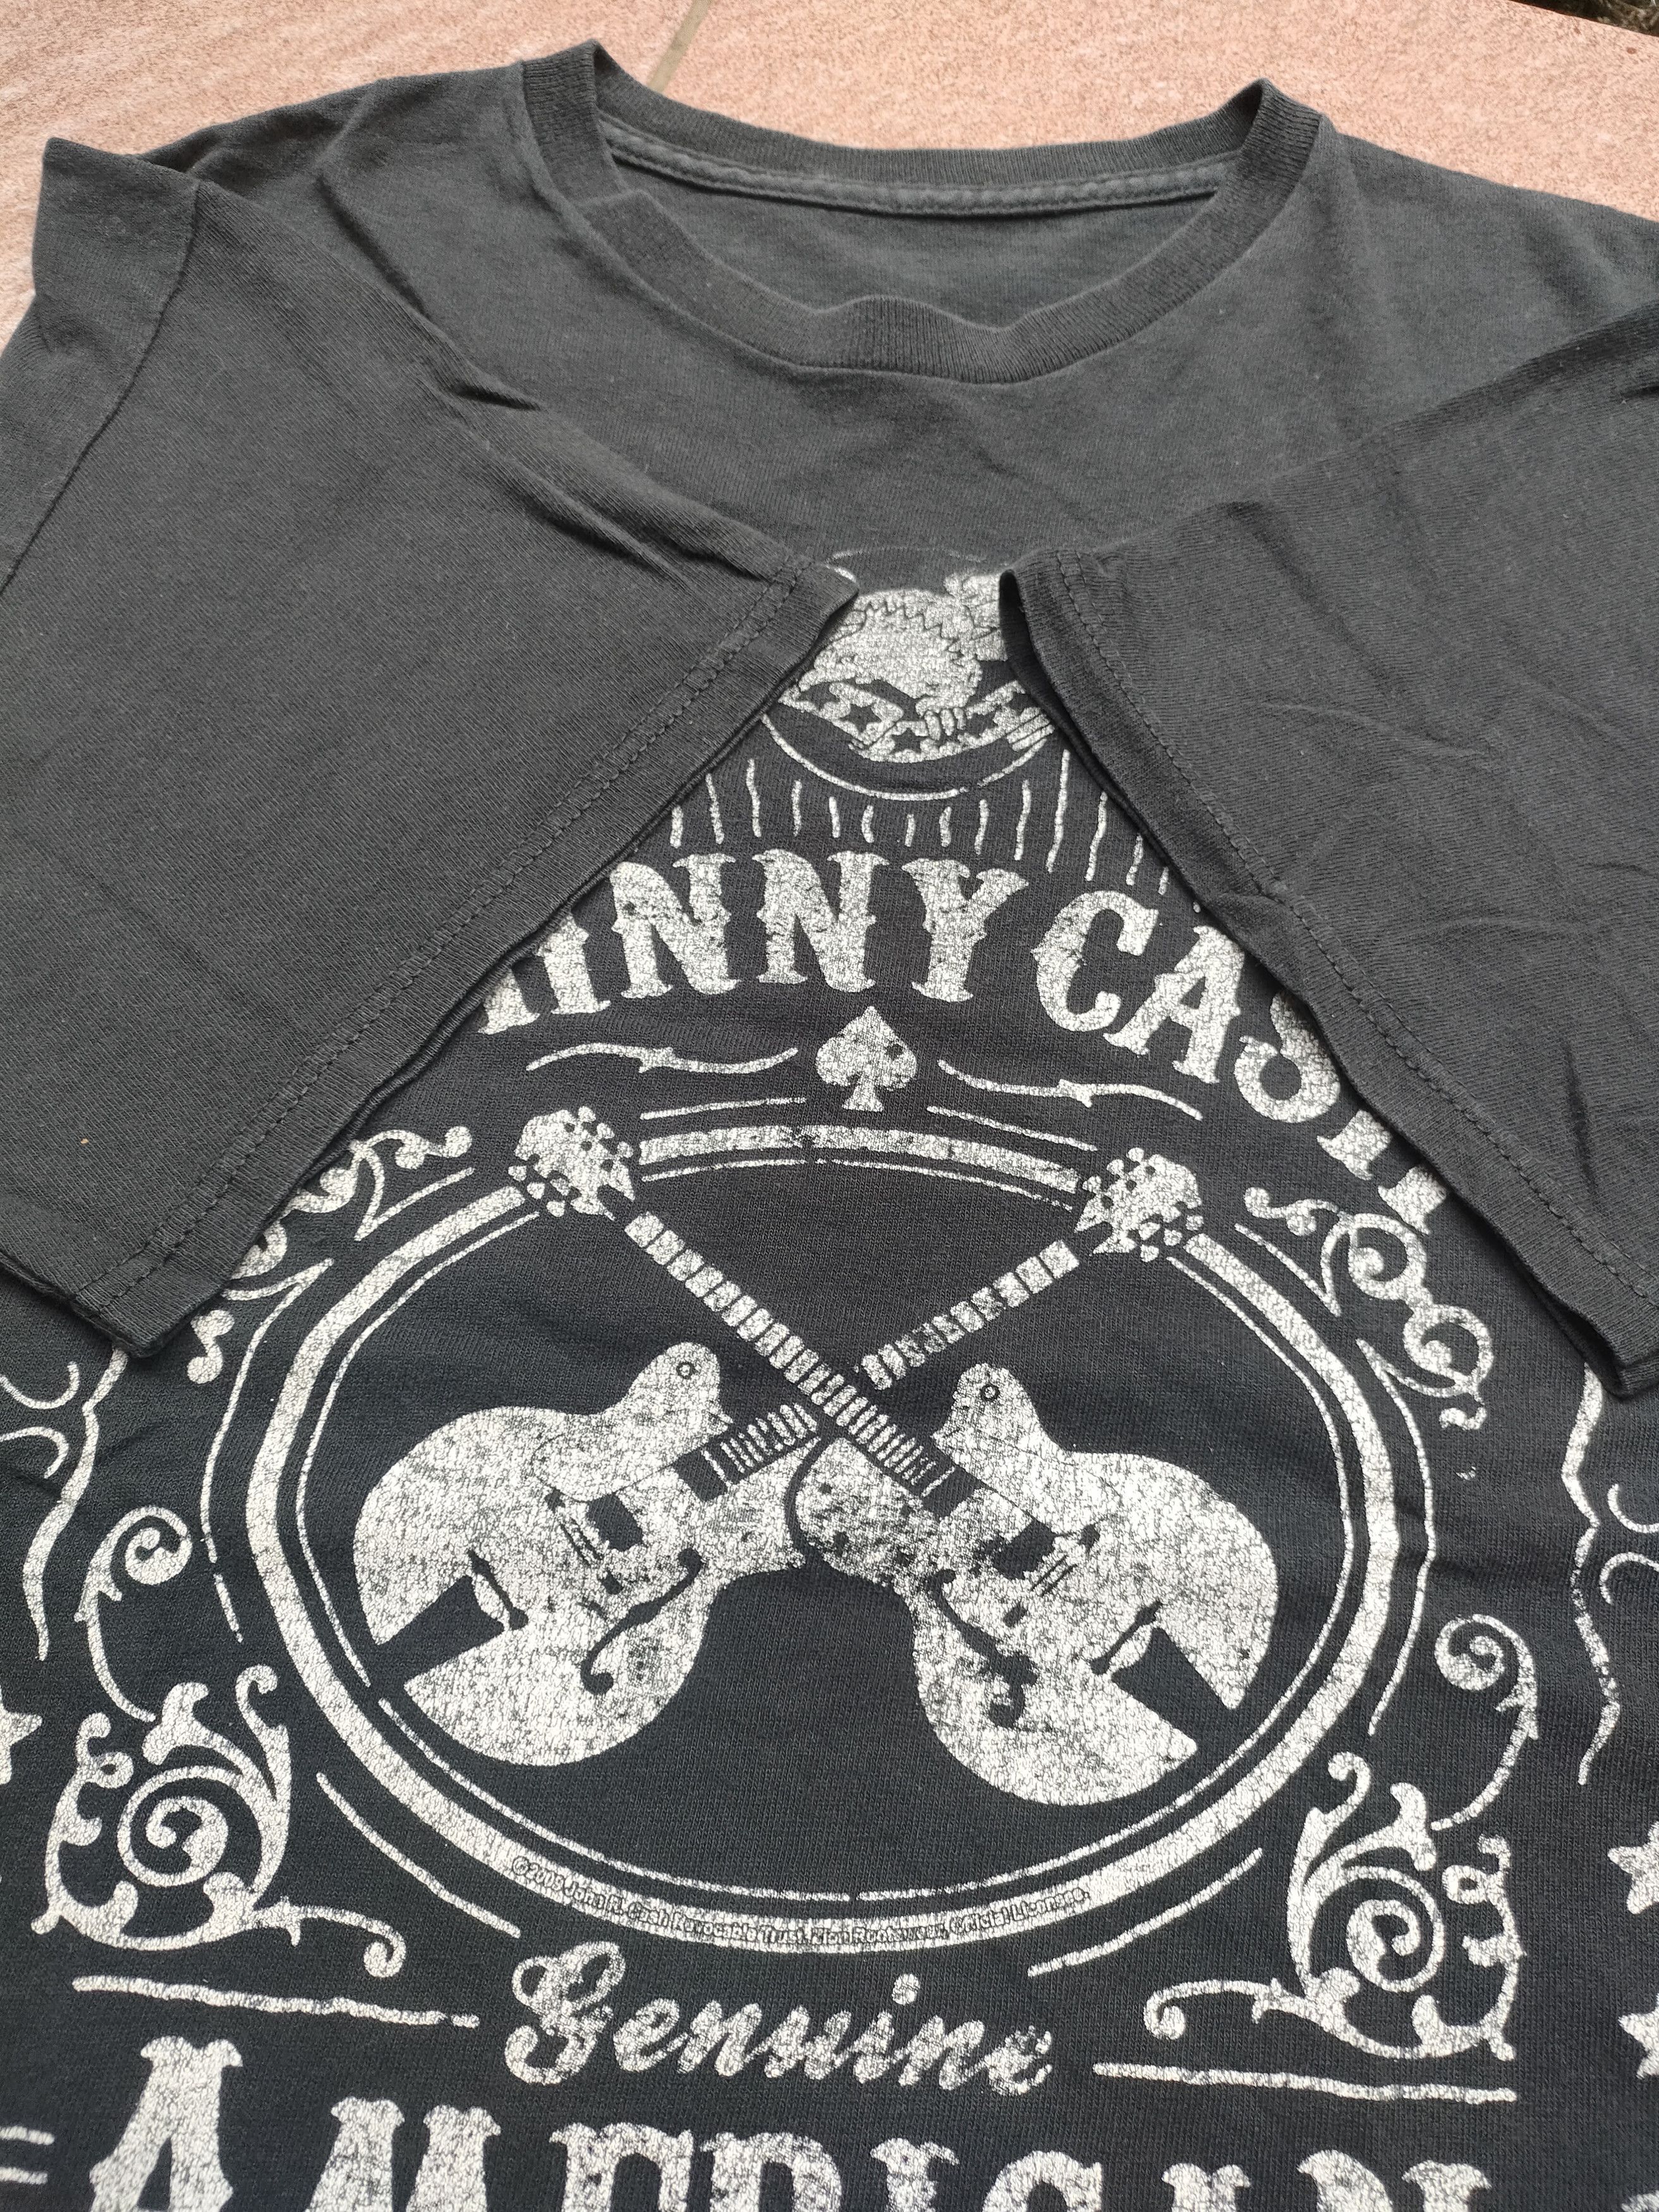 Vintage Johnny Cash shirt - 5